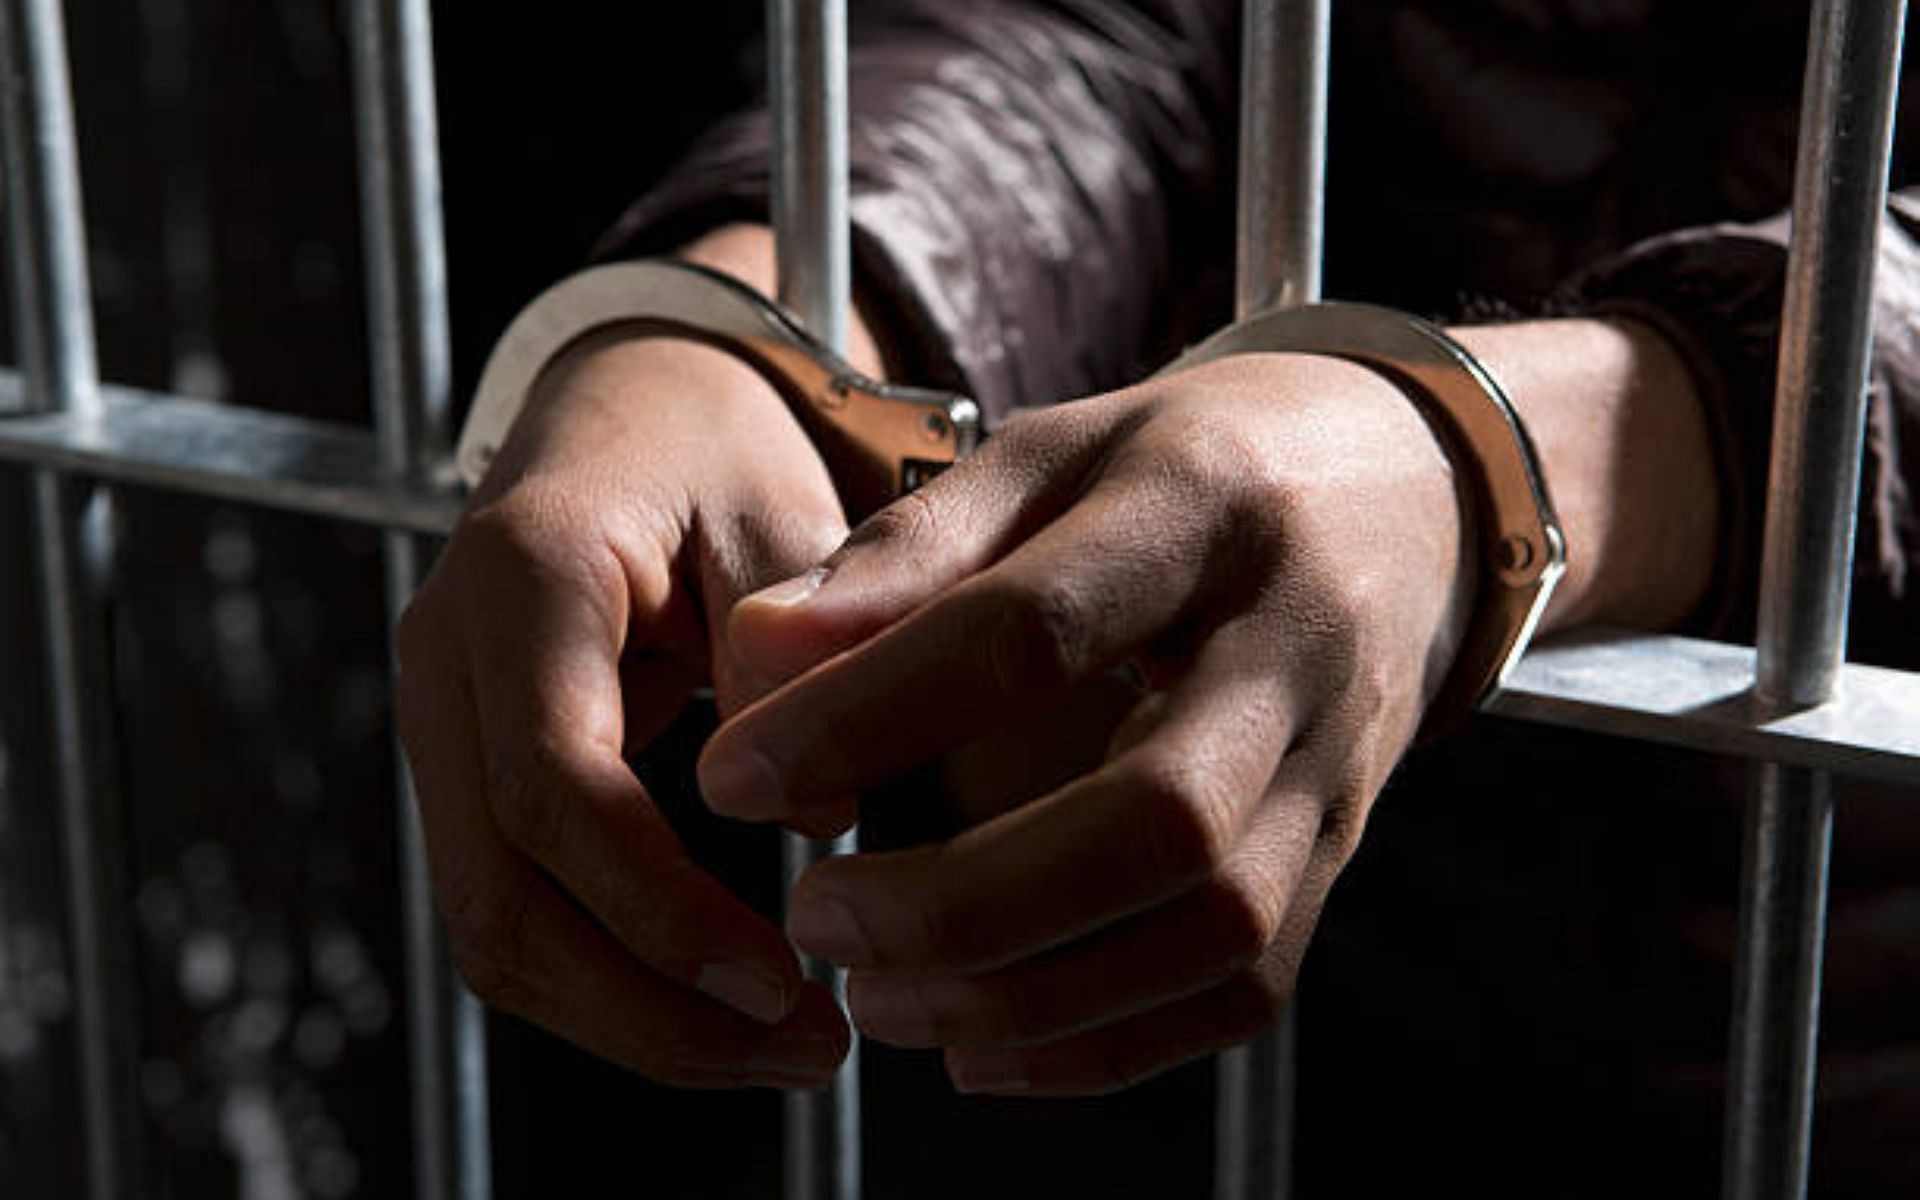 Mientras que cinco de las seis personas involucradas fueron sentenciadas a cadena perpetua, una fue sentenciada a muerte (Imagen a través de Caspar Benson/Getty Images)